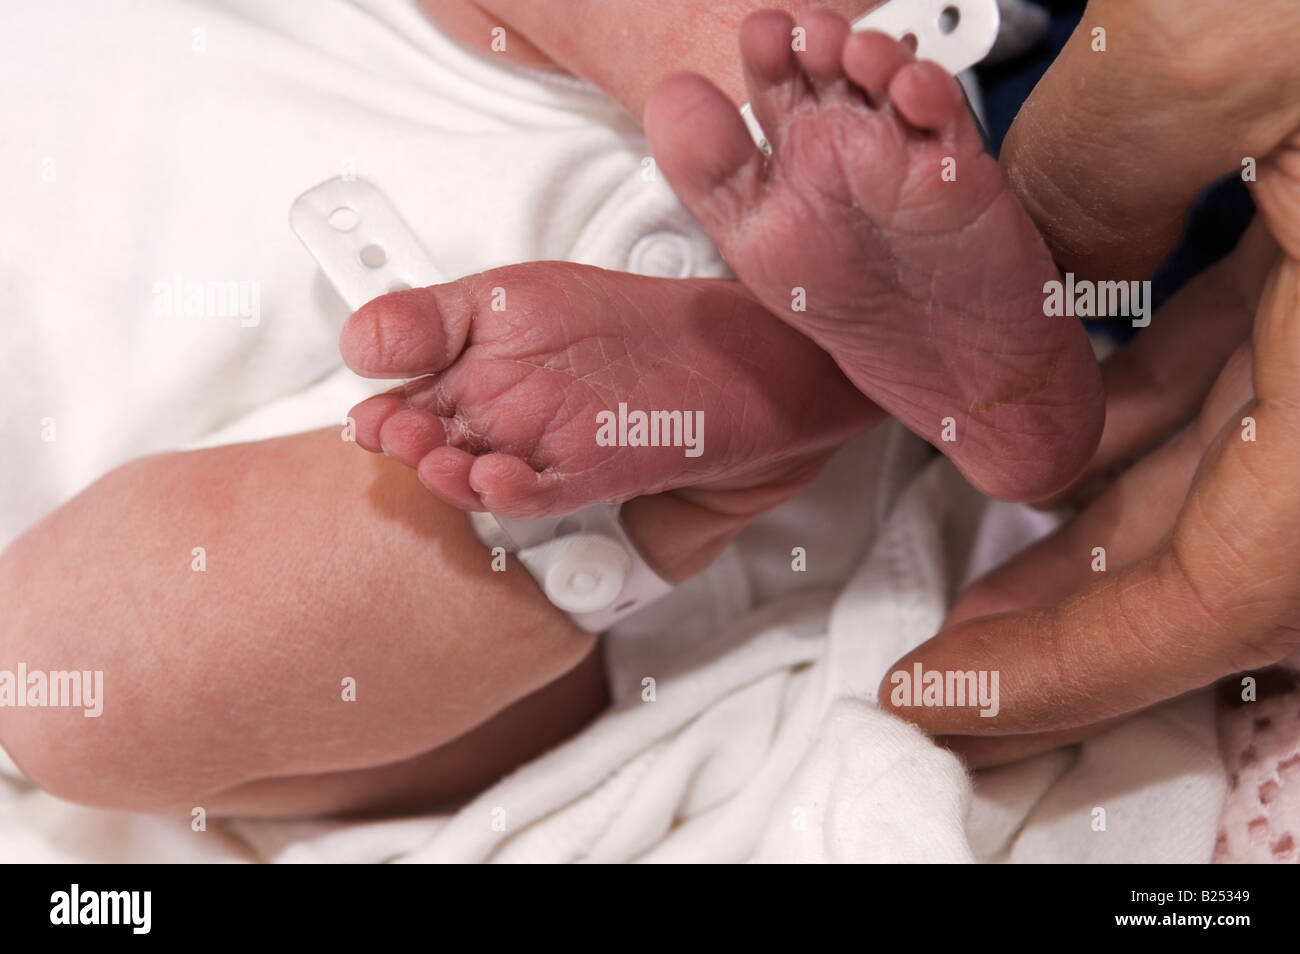 Adulto mani tenendo i neonati piedi con ospedale tag di identificazione sulle gambe Foto Stock